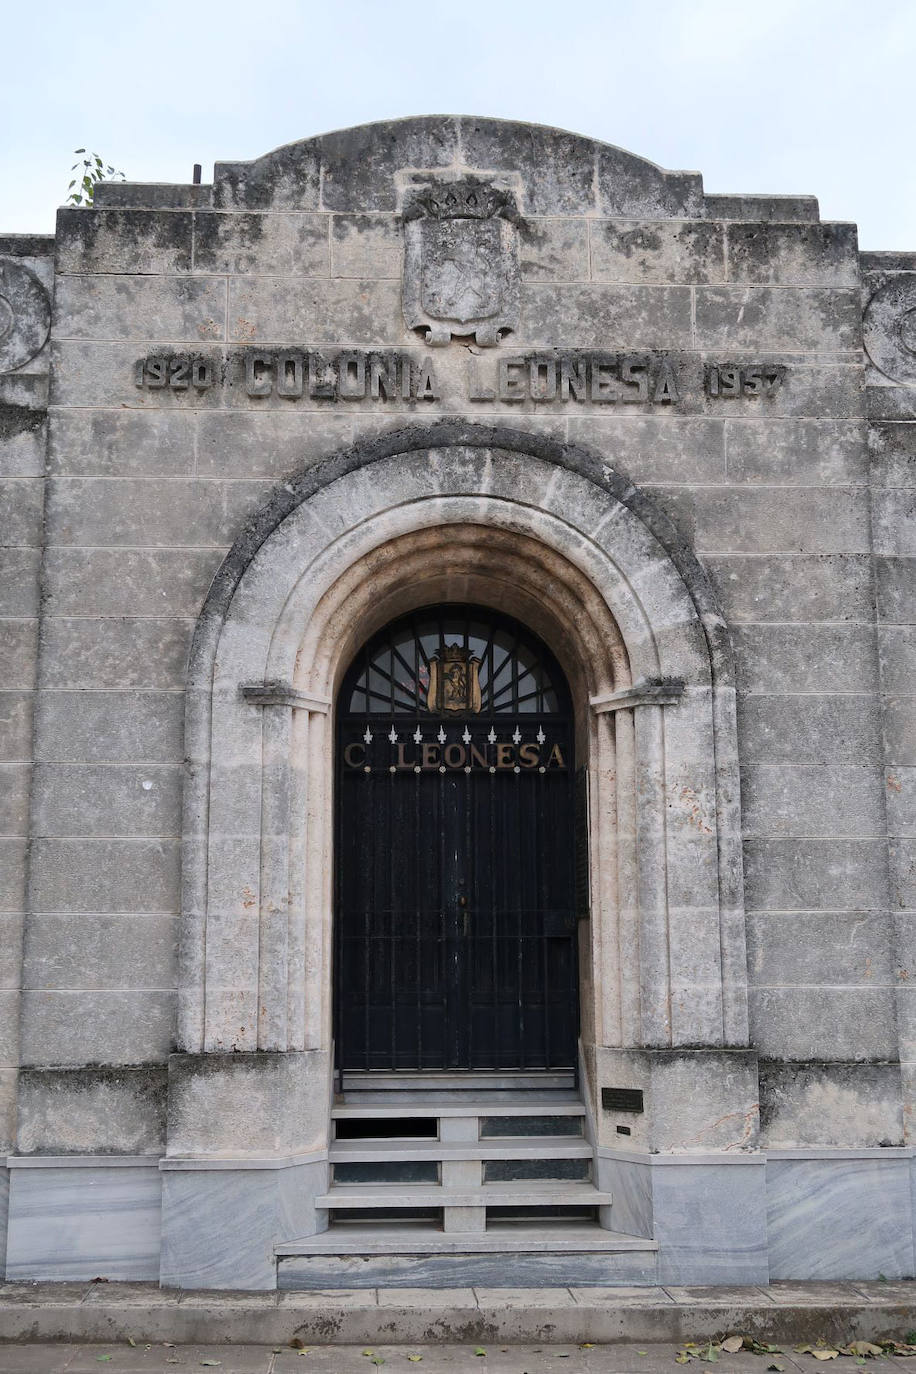 Fotos: Panteón de la Colonia Leonesa en Cuba